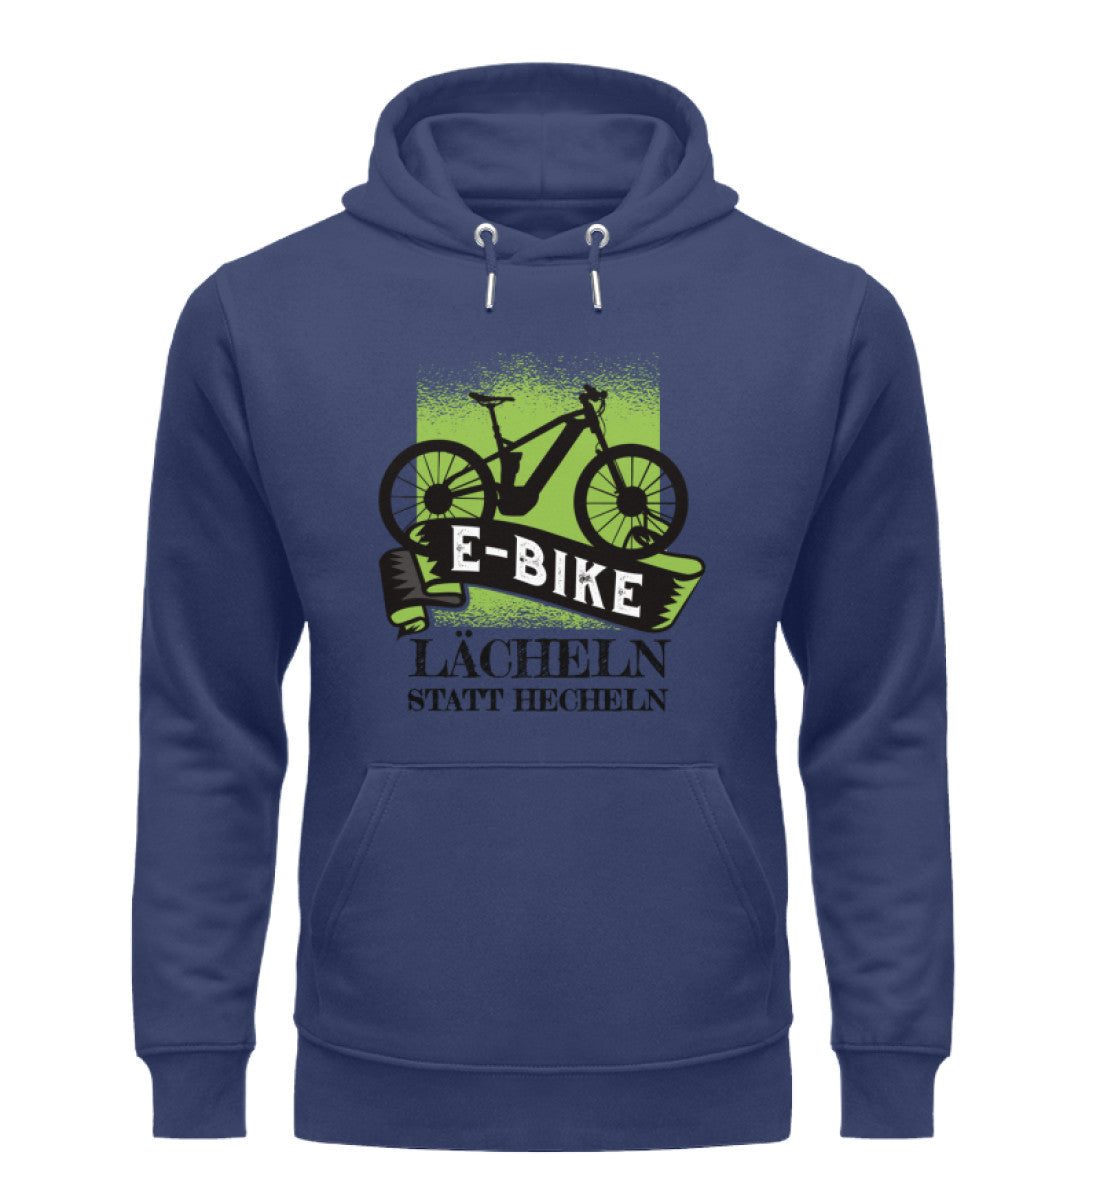 E-Bike - Lächeln statt hecheln - Unisex Premium Organic Hoodie e-bike Navyblau